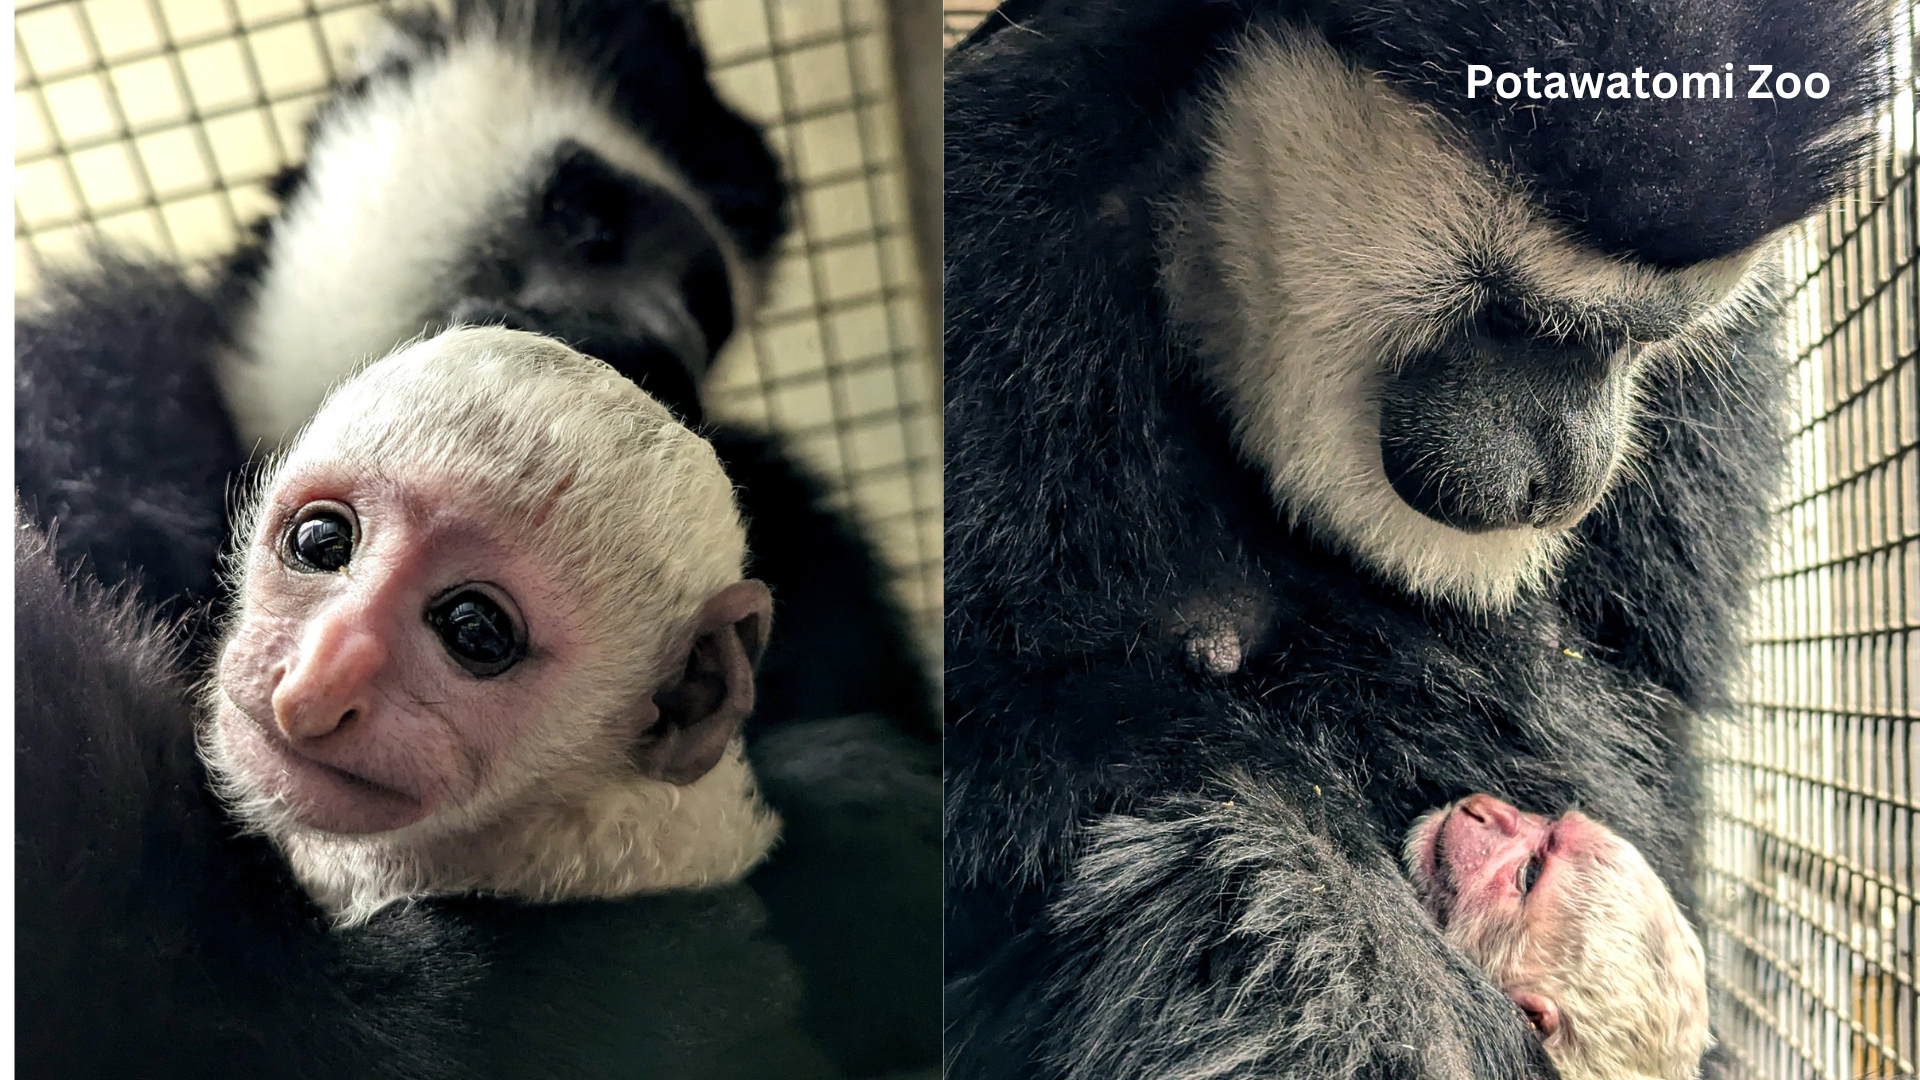 New baby at Potawatomi Zoo